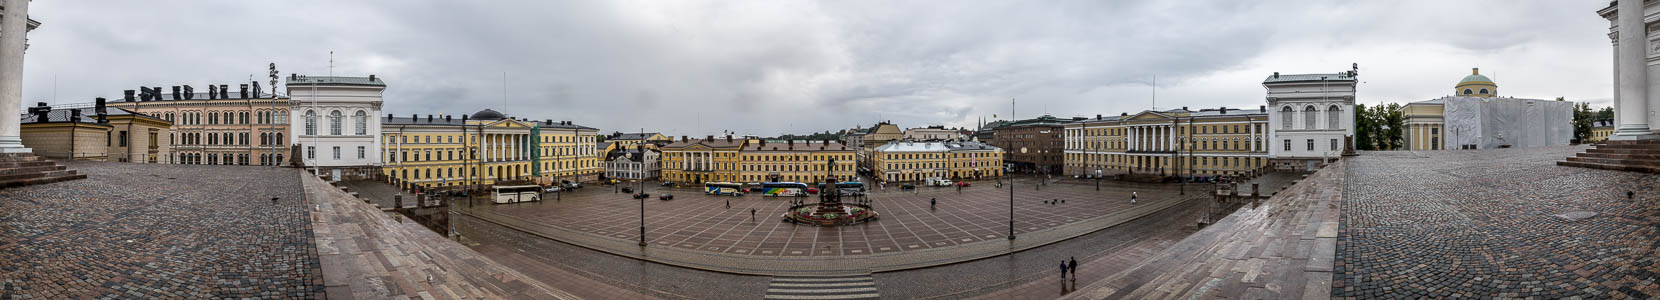 Helsinki Kruununhaka (Kronohagen): Senatsplatz Denkmal für Alexander II. Hauptgebäude der Universität Helsinki Senatsgebäude